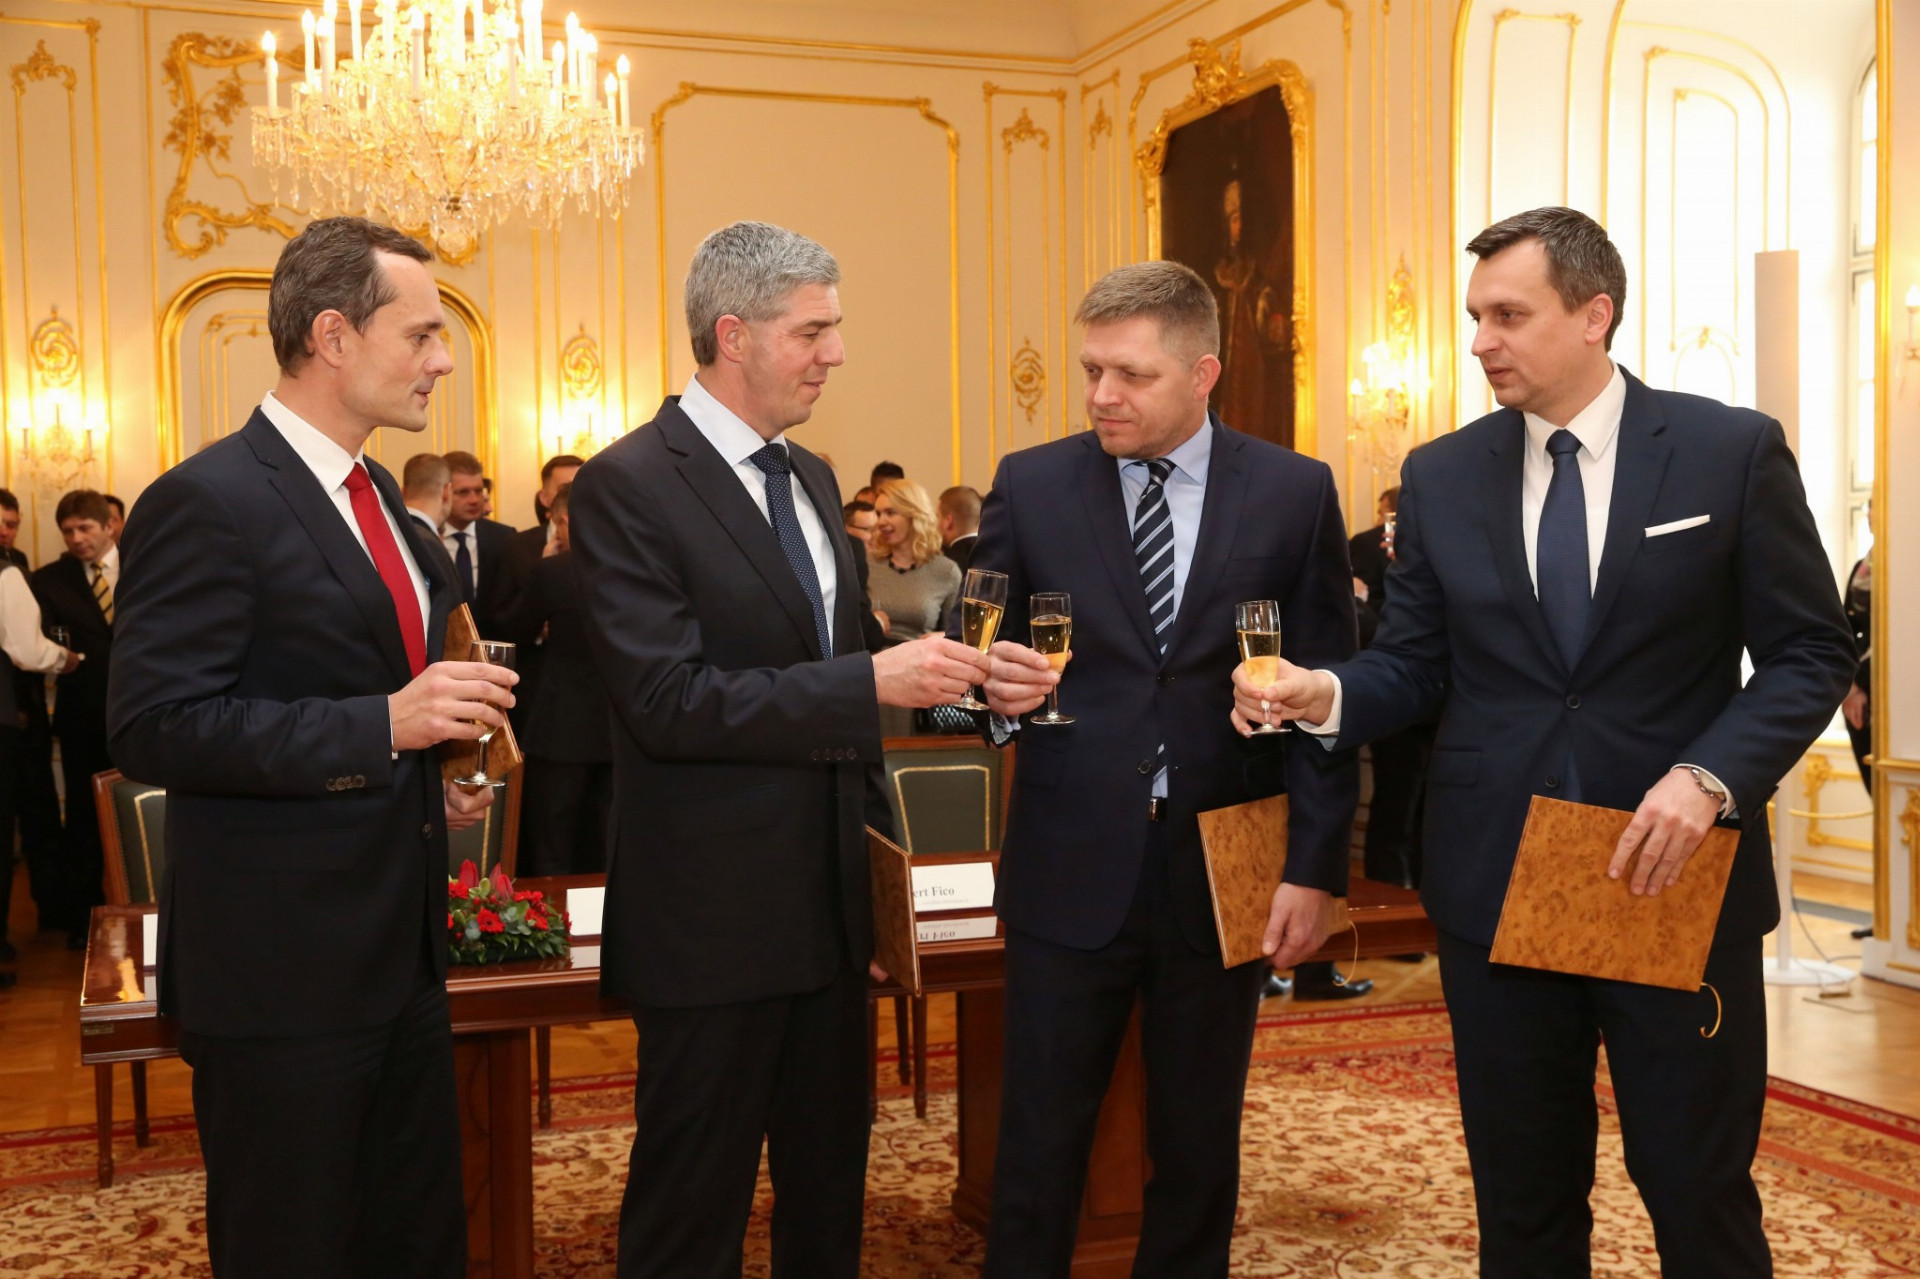 Podpis koaličnej dohody - Procházka, Danko, Fico, Bugár